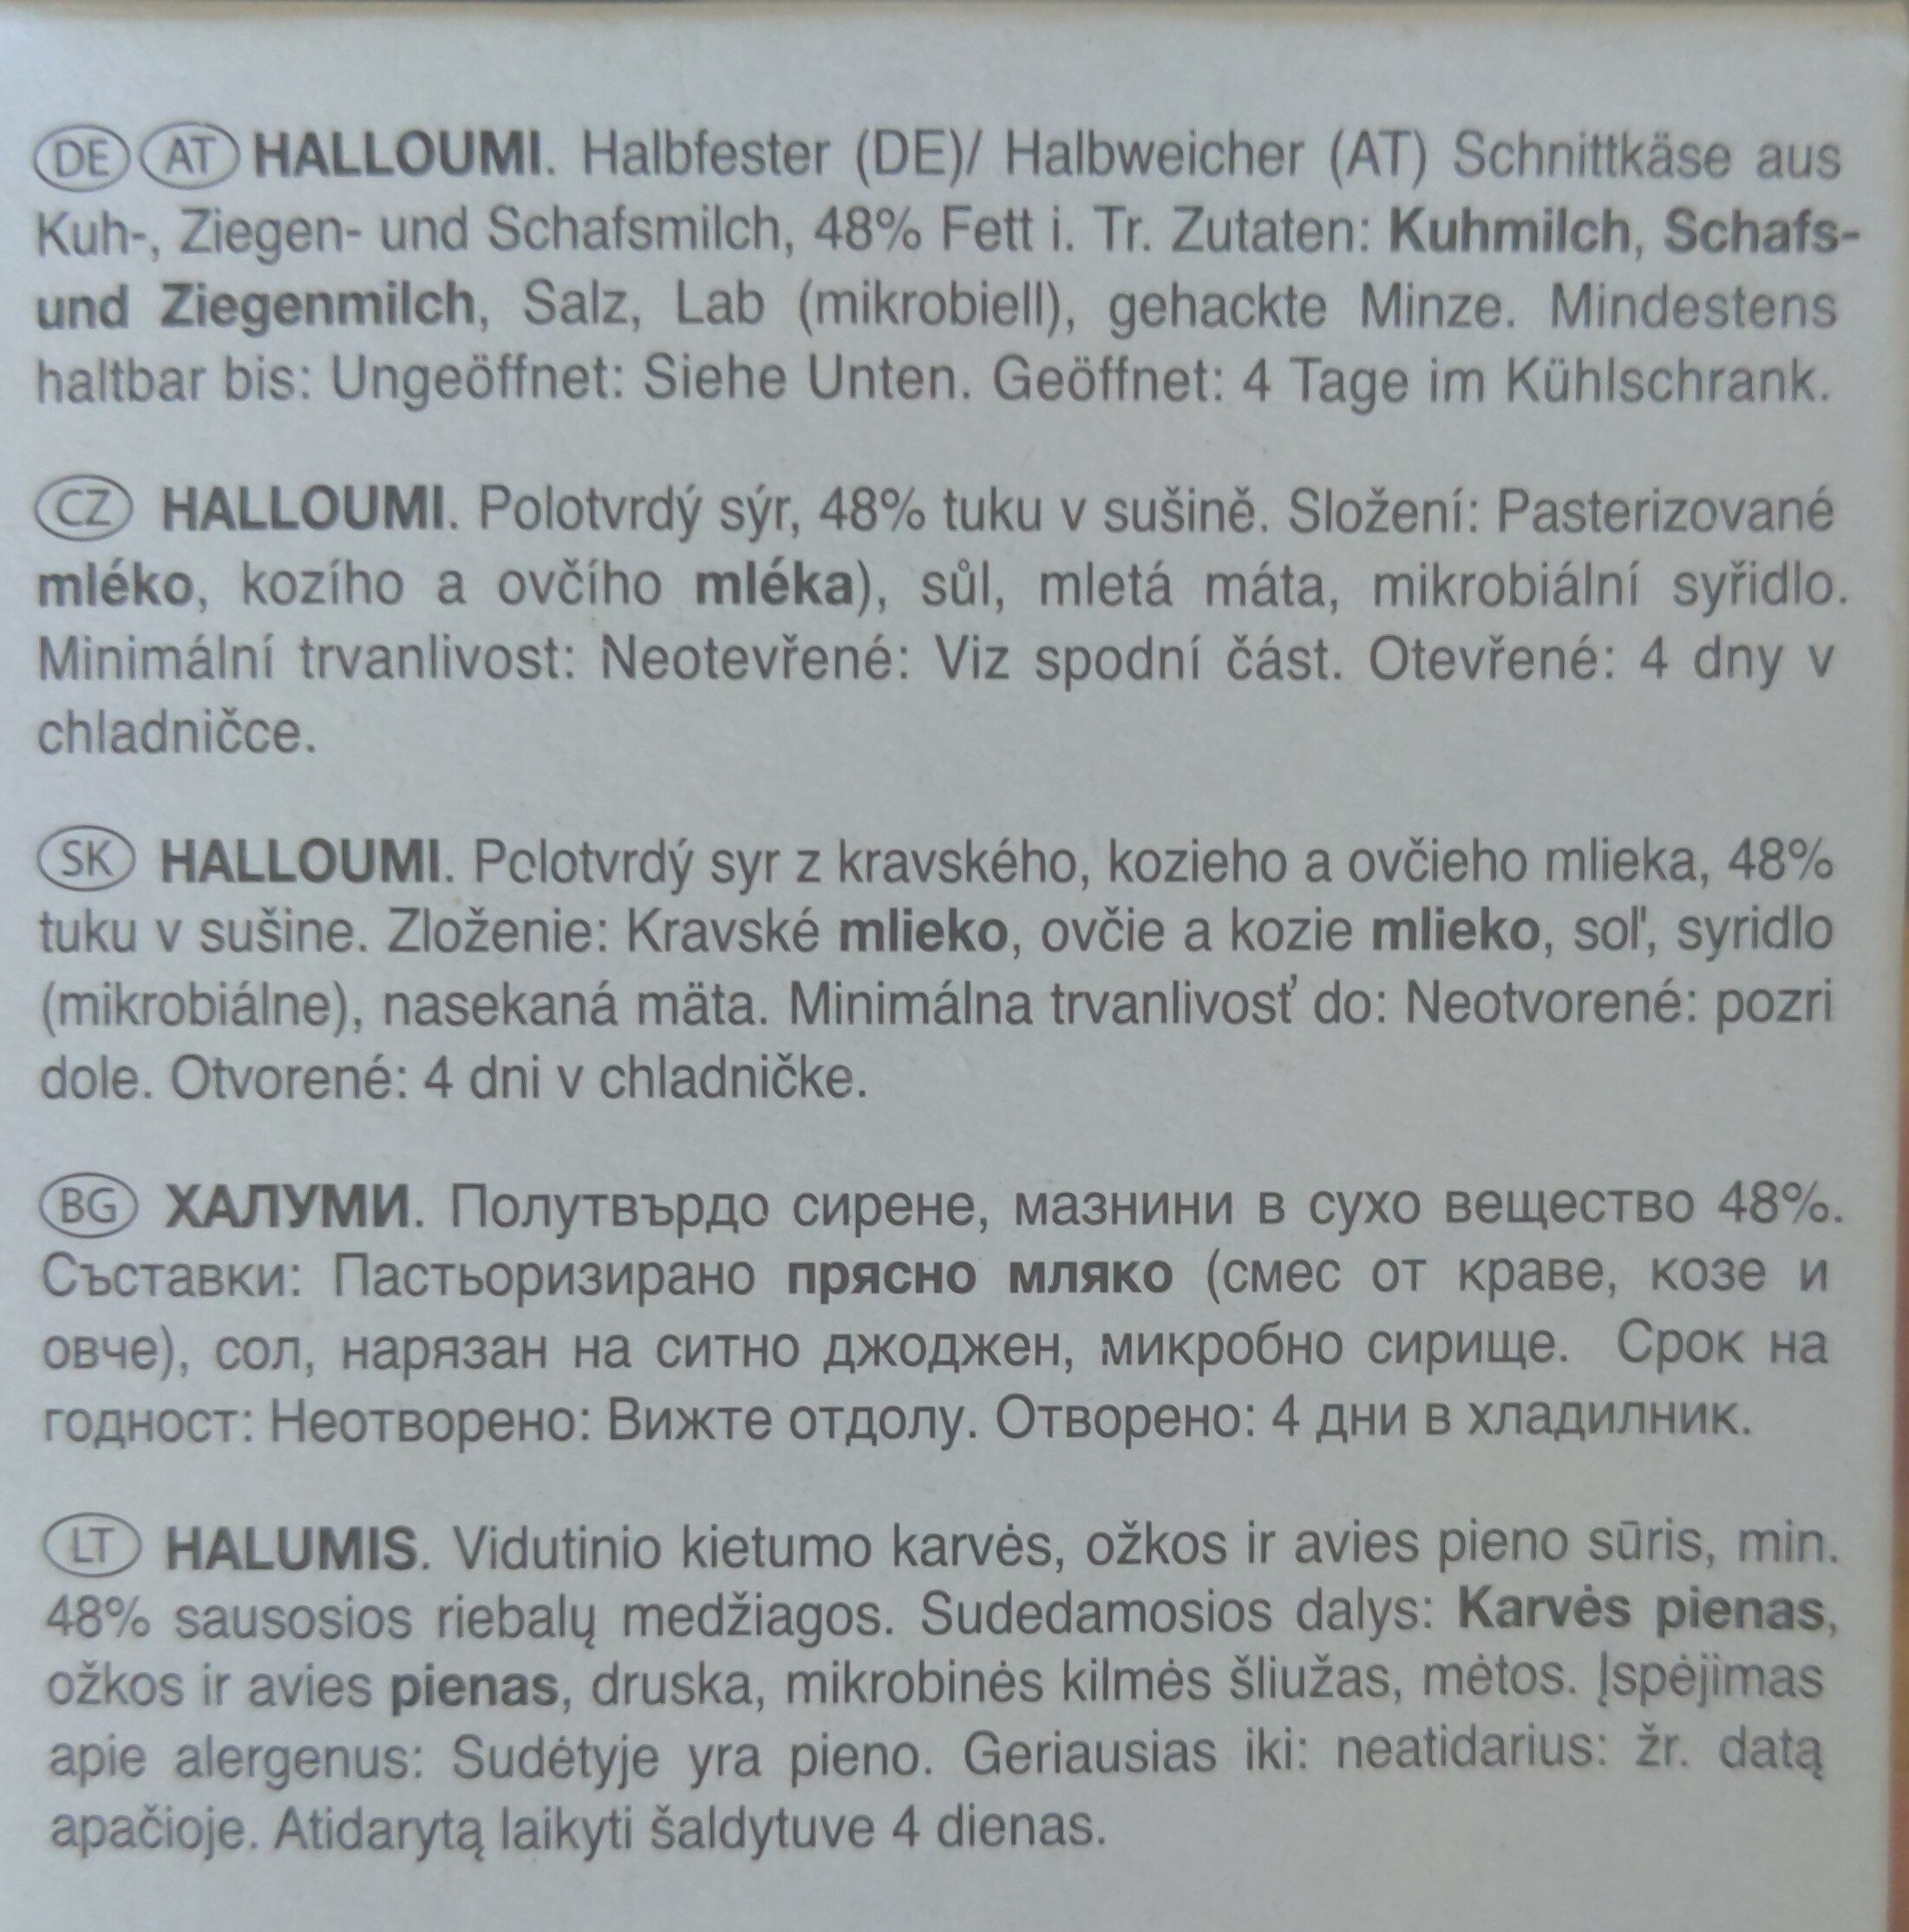 Halloumi - Ingredients